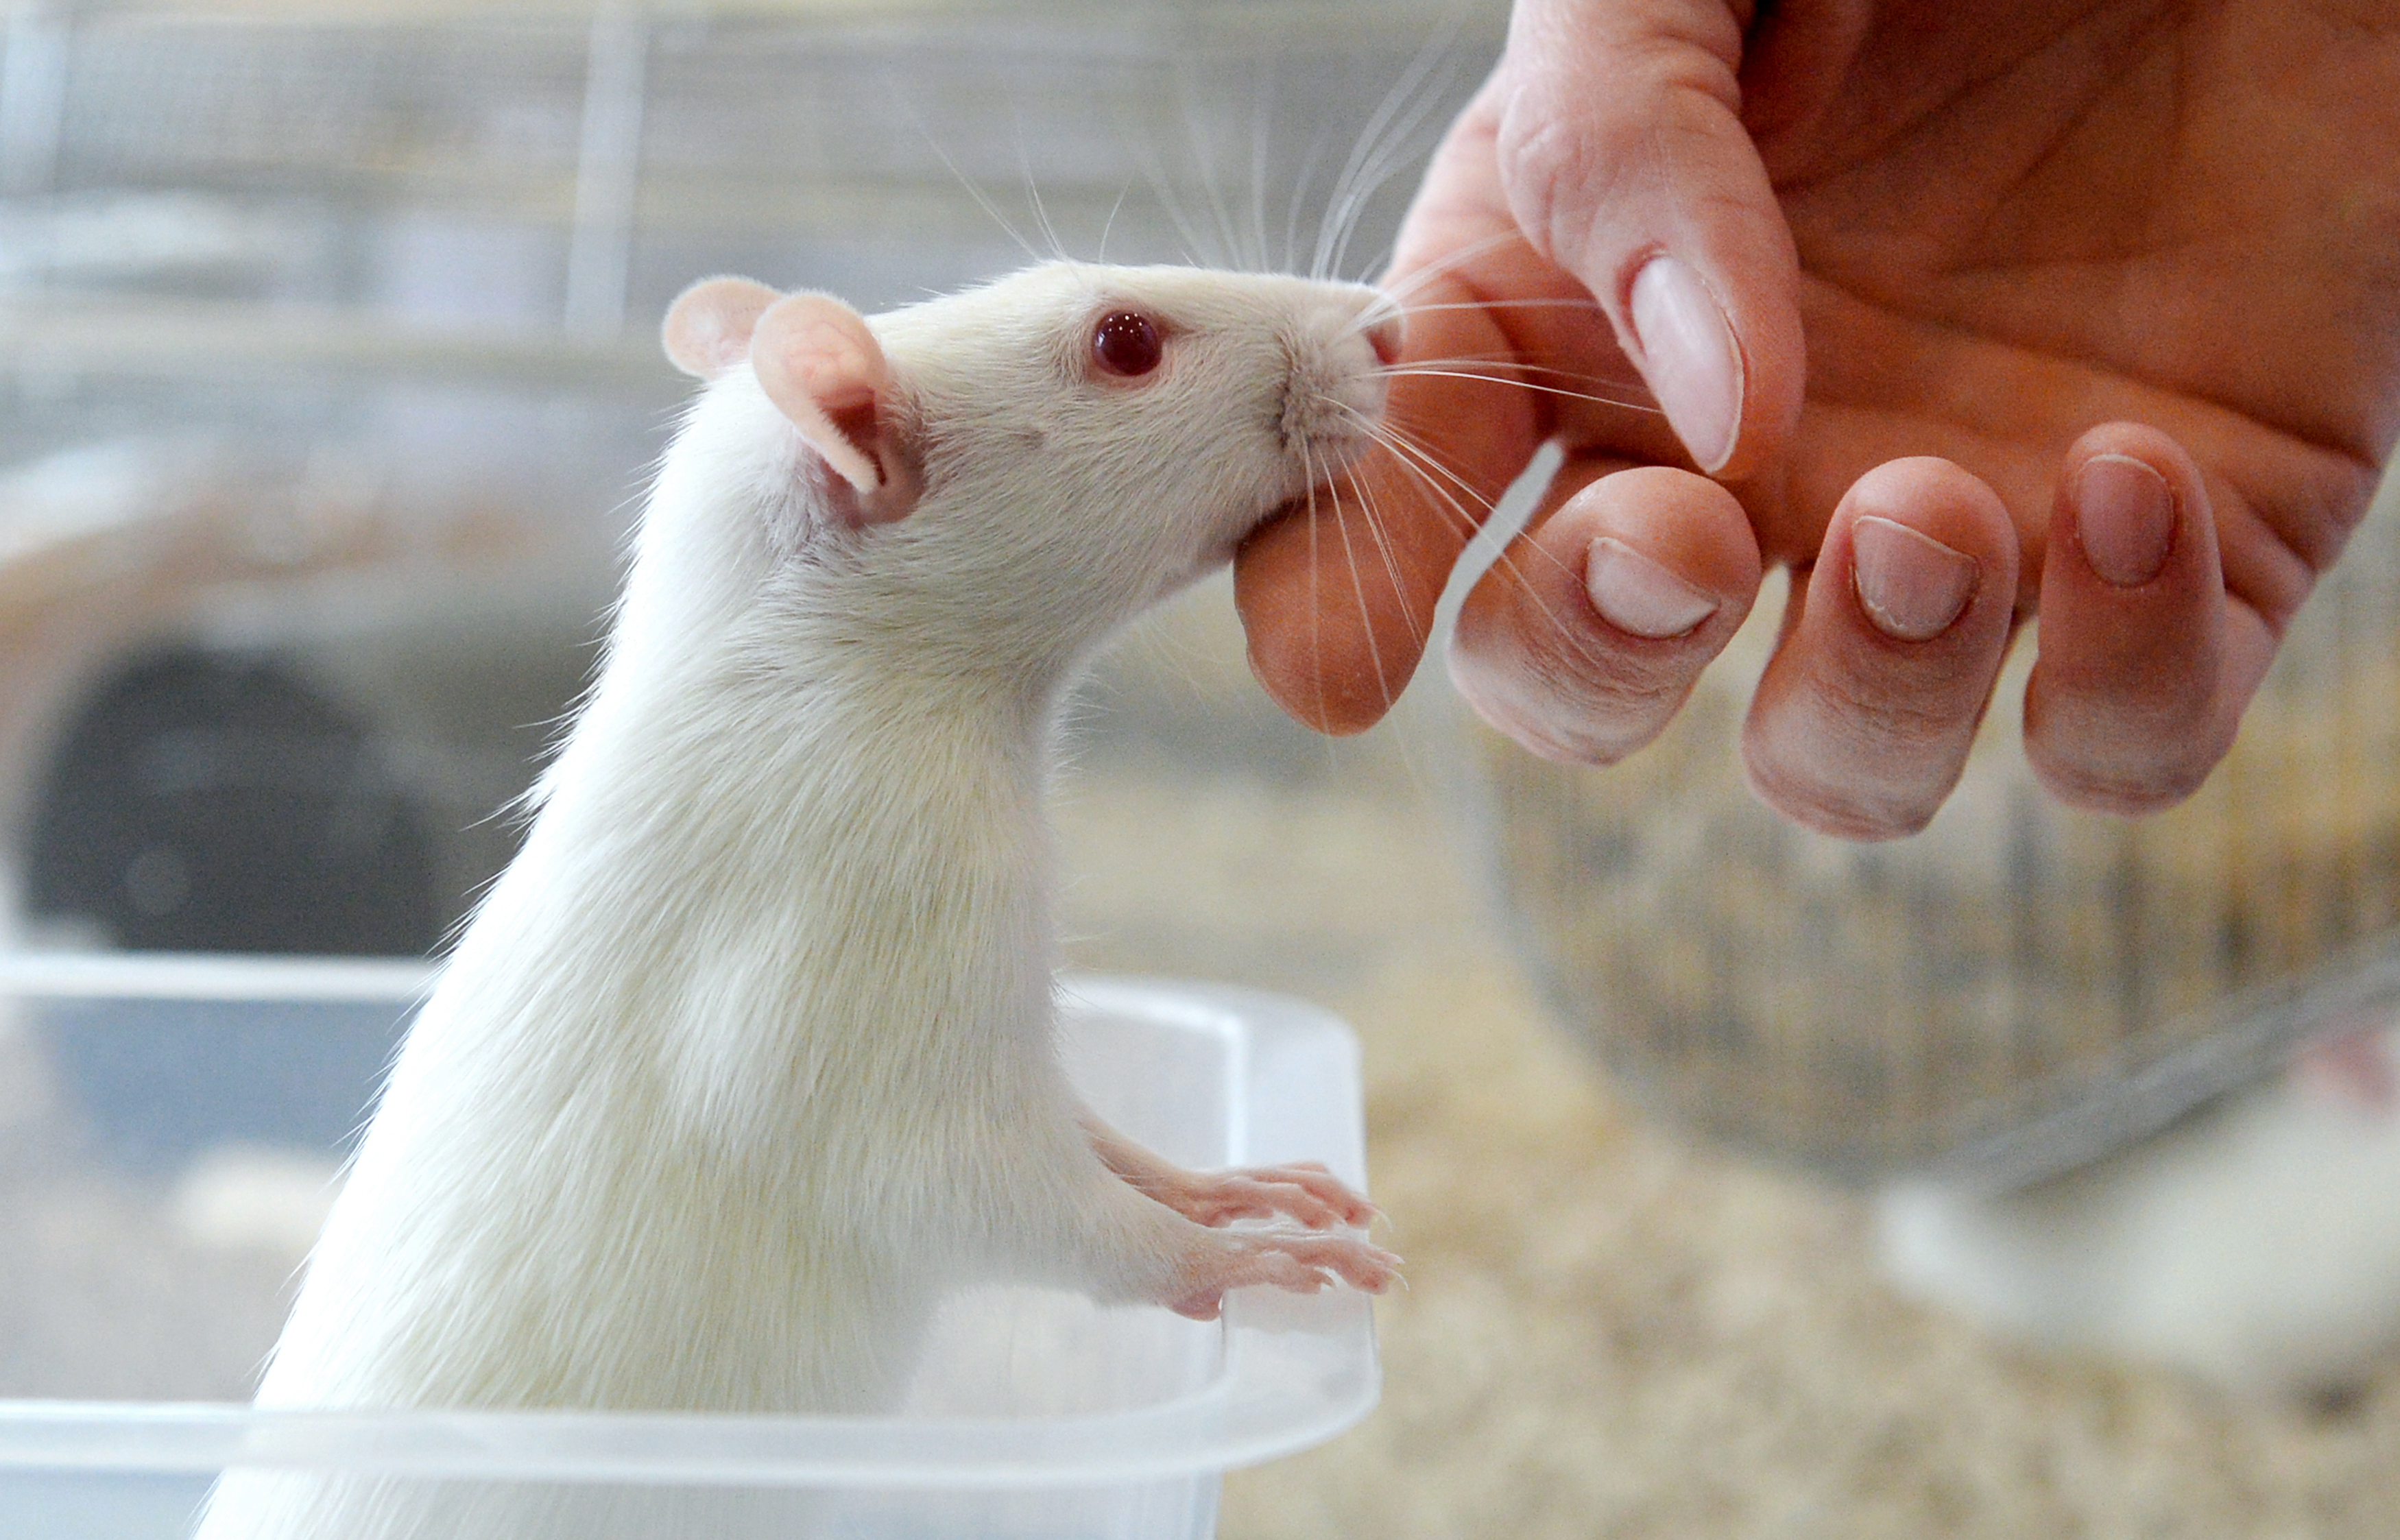 Szomjas patkányok segítenek megérteni, miért válunk játékfüggővé